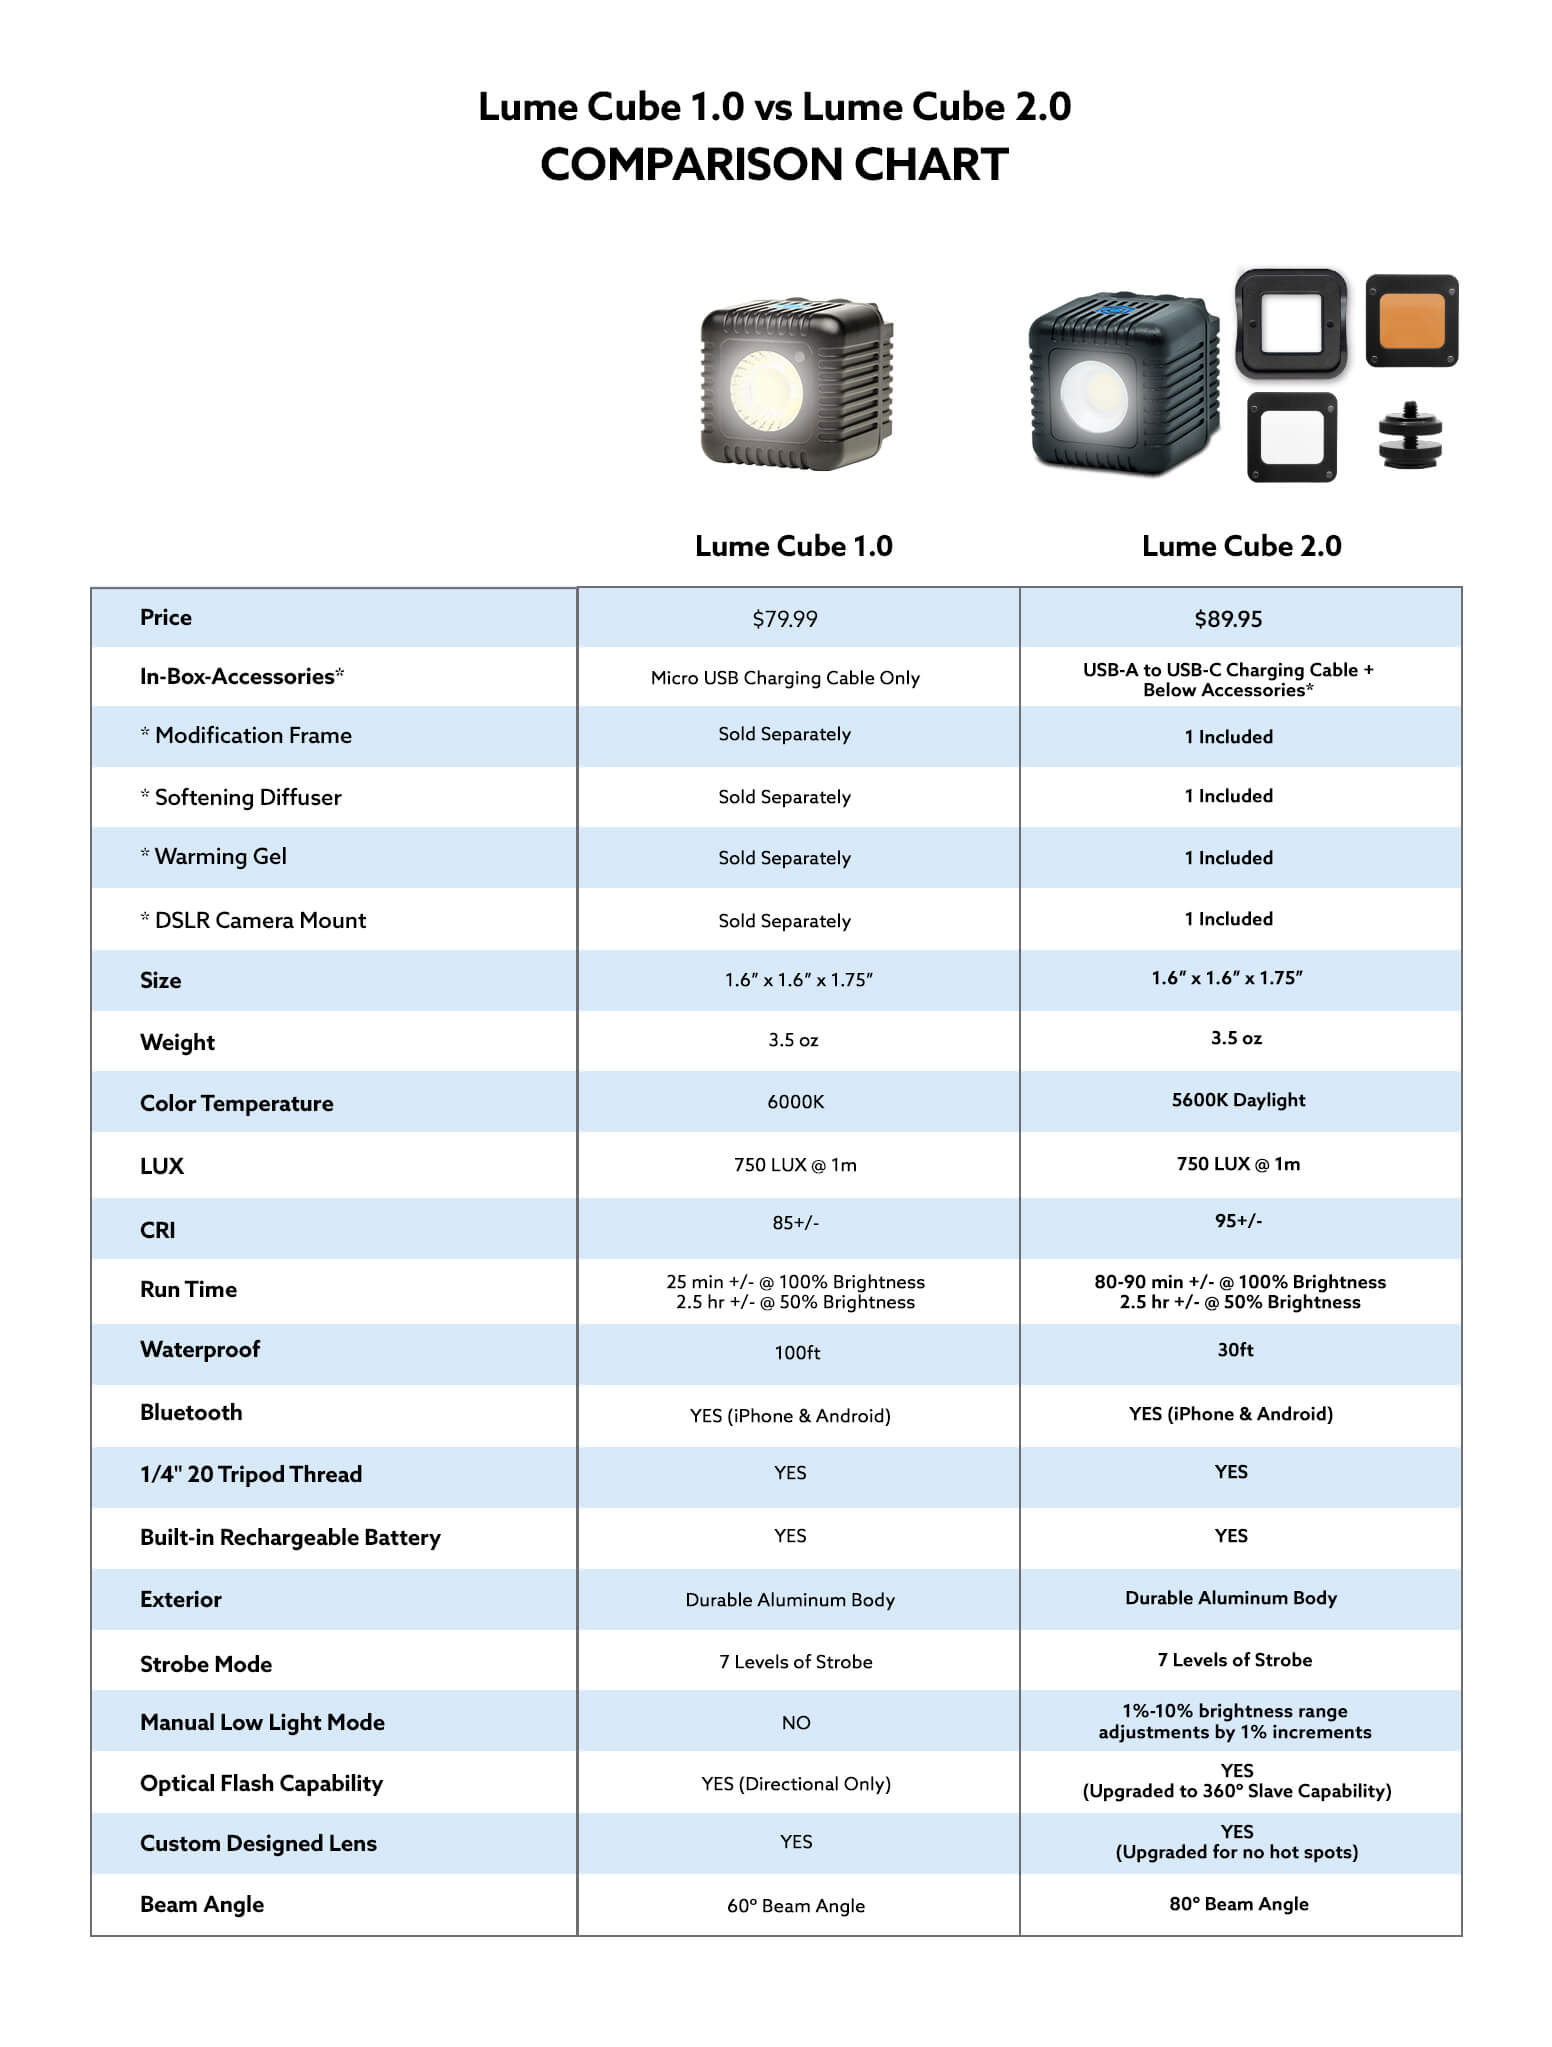 Lume Cube 2.0vs. 1.0 comparison chart